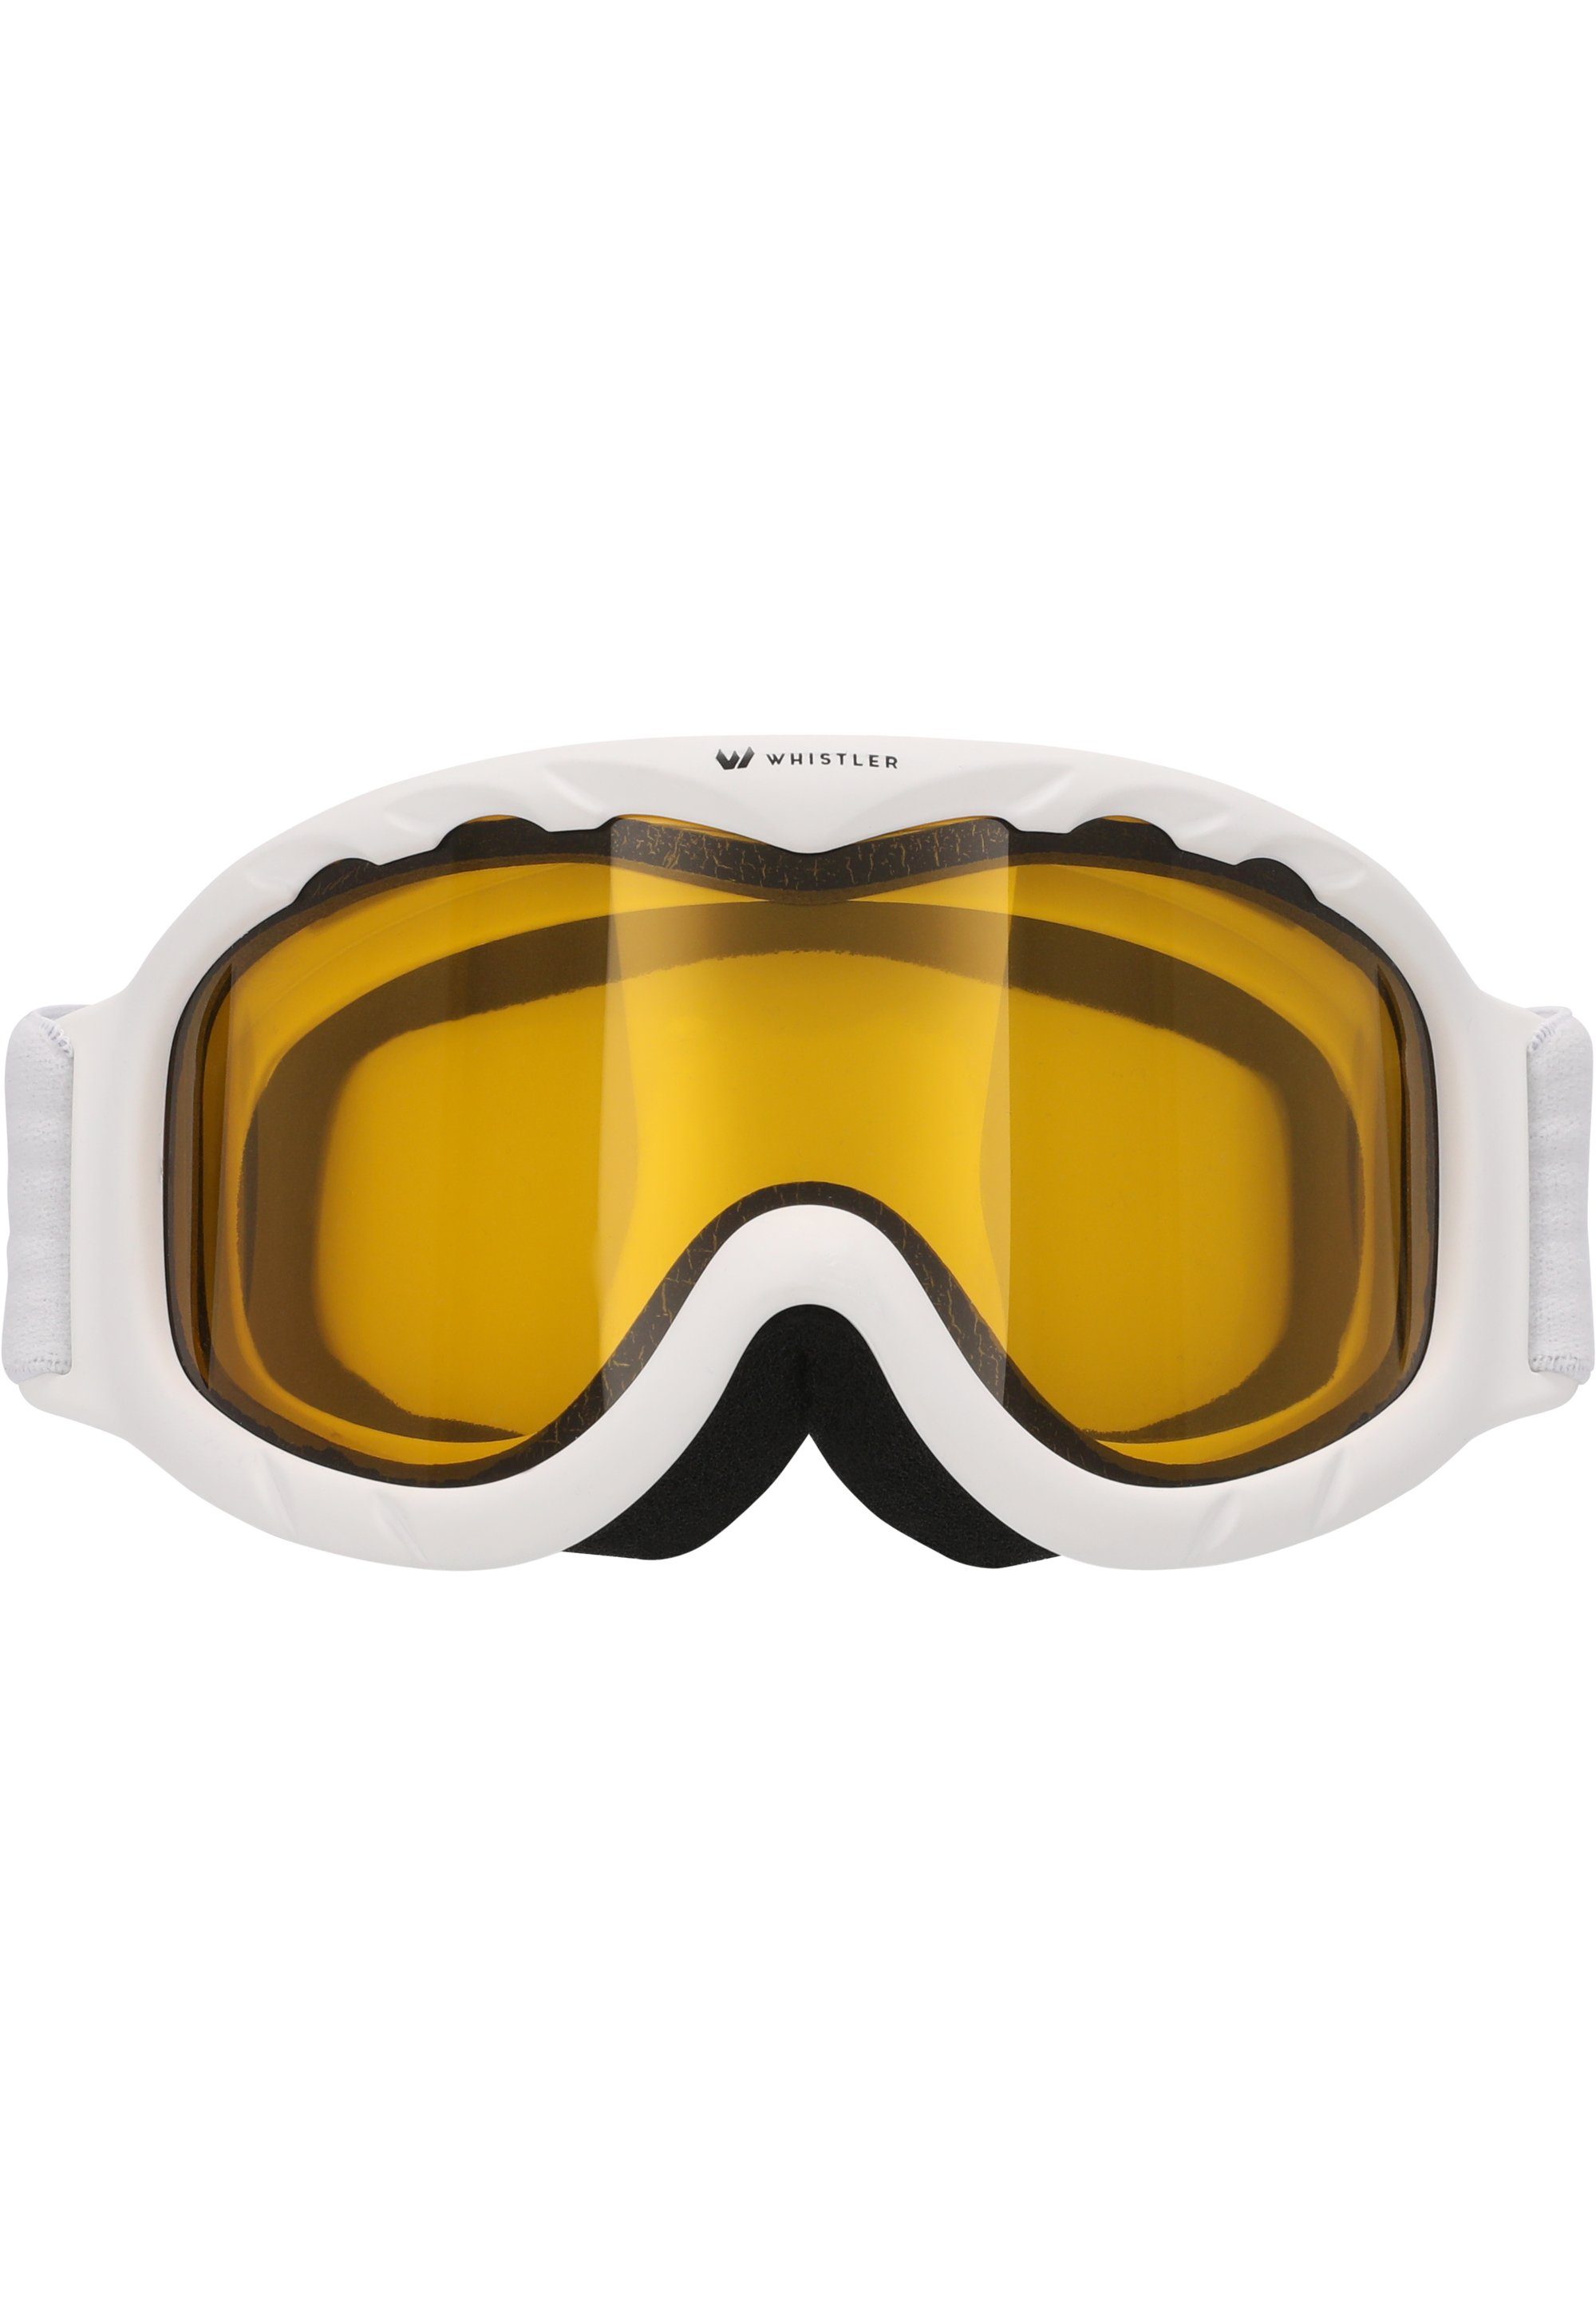 Anti-Fog-Beschichtung mit Ski Skibrille WHISTLER Jr. WS300 Goggle,